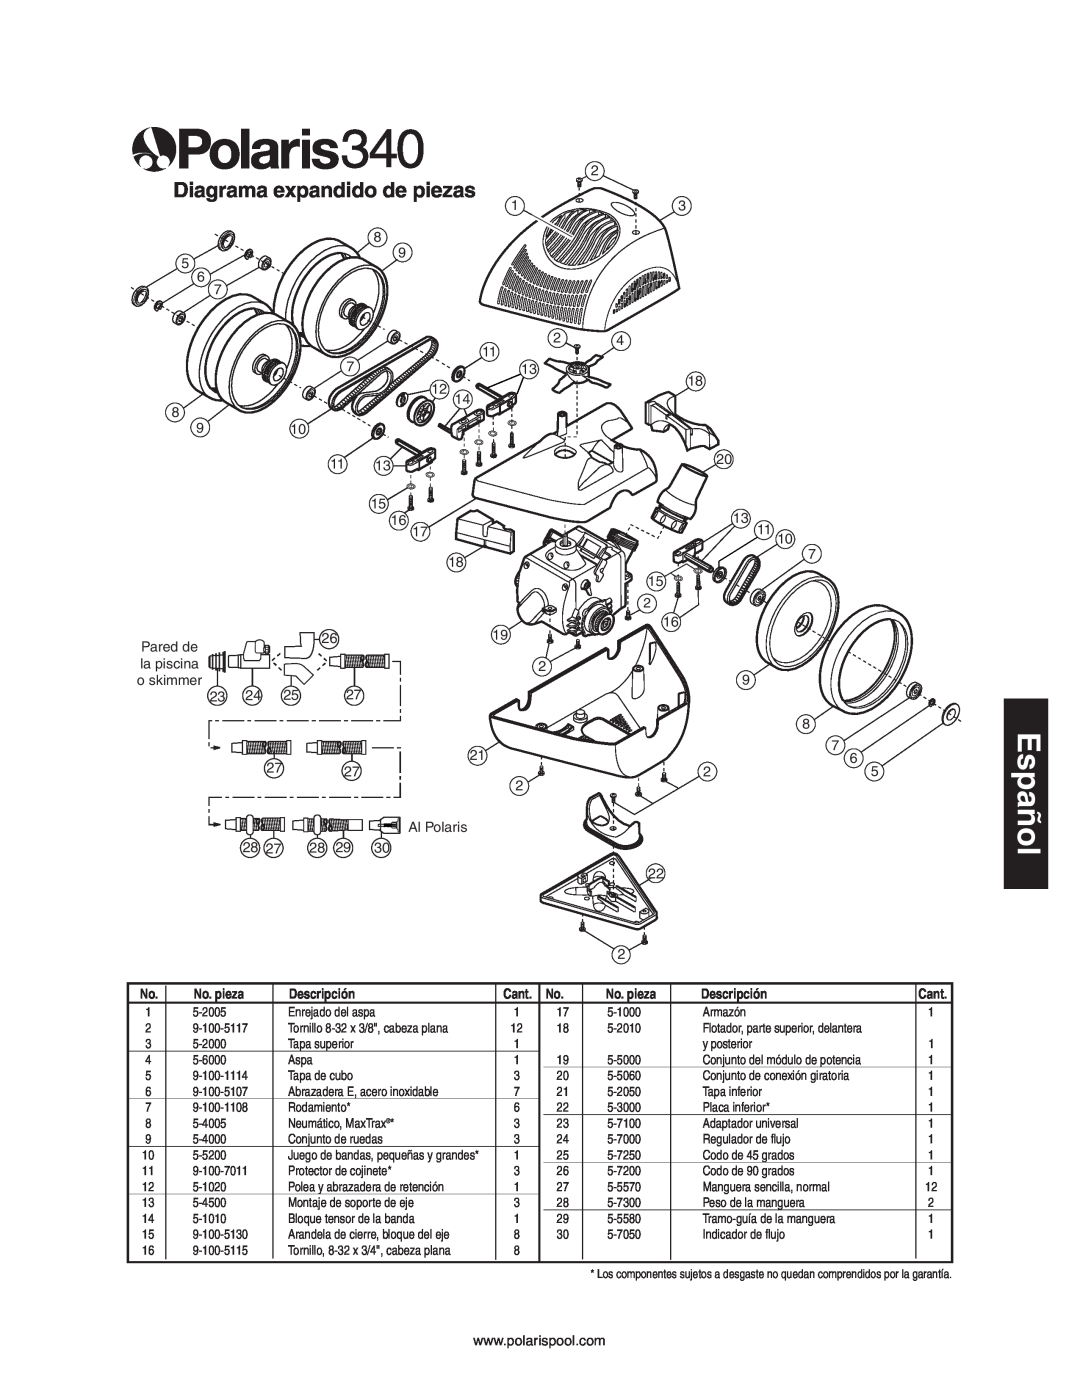 Polaris 340 owner manual Diagrama expandido de piezas, Español, No. pieza, Descripción 